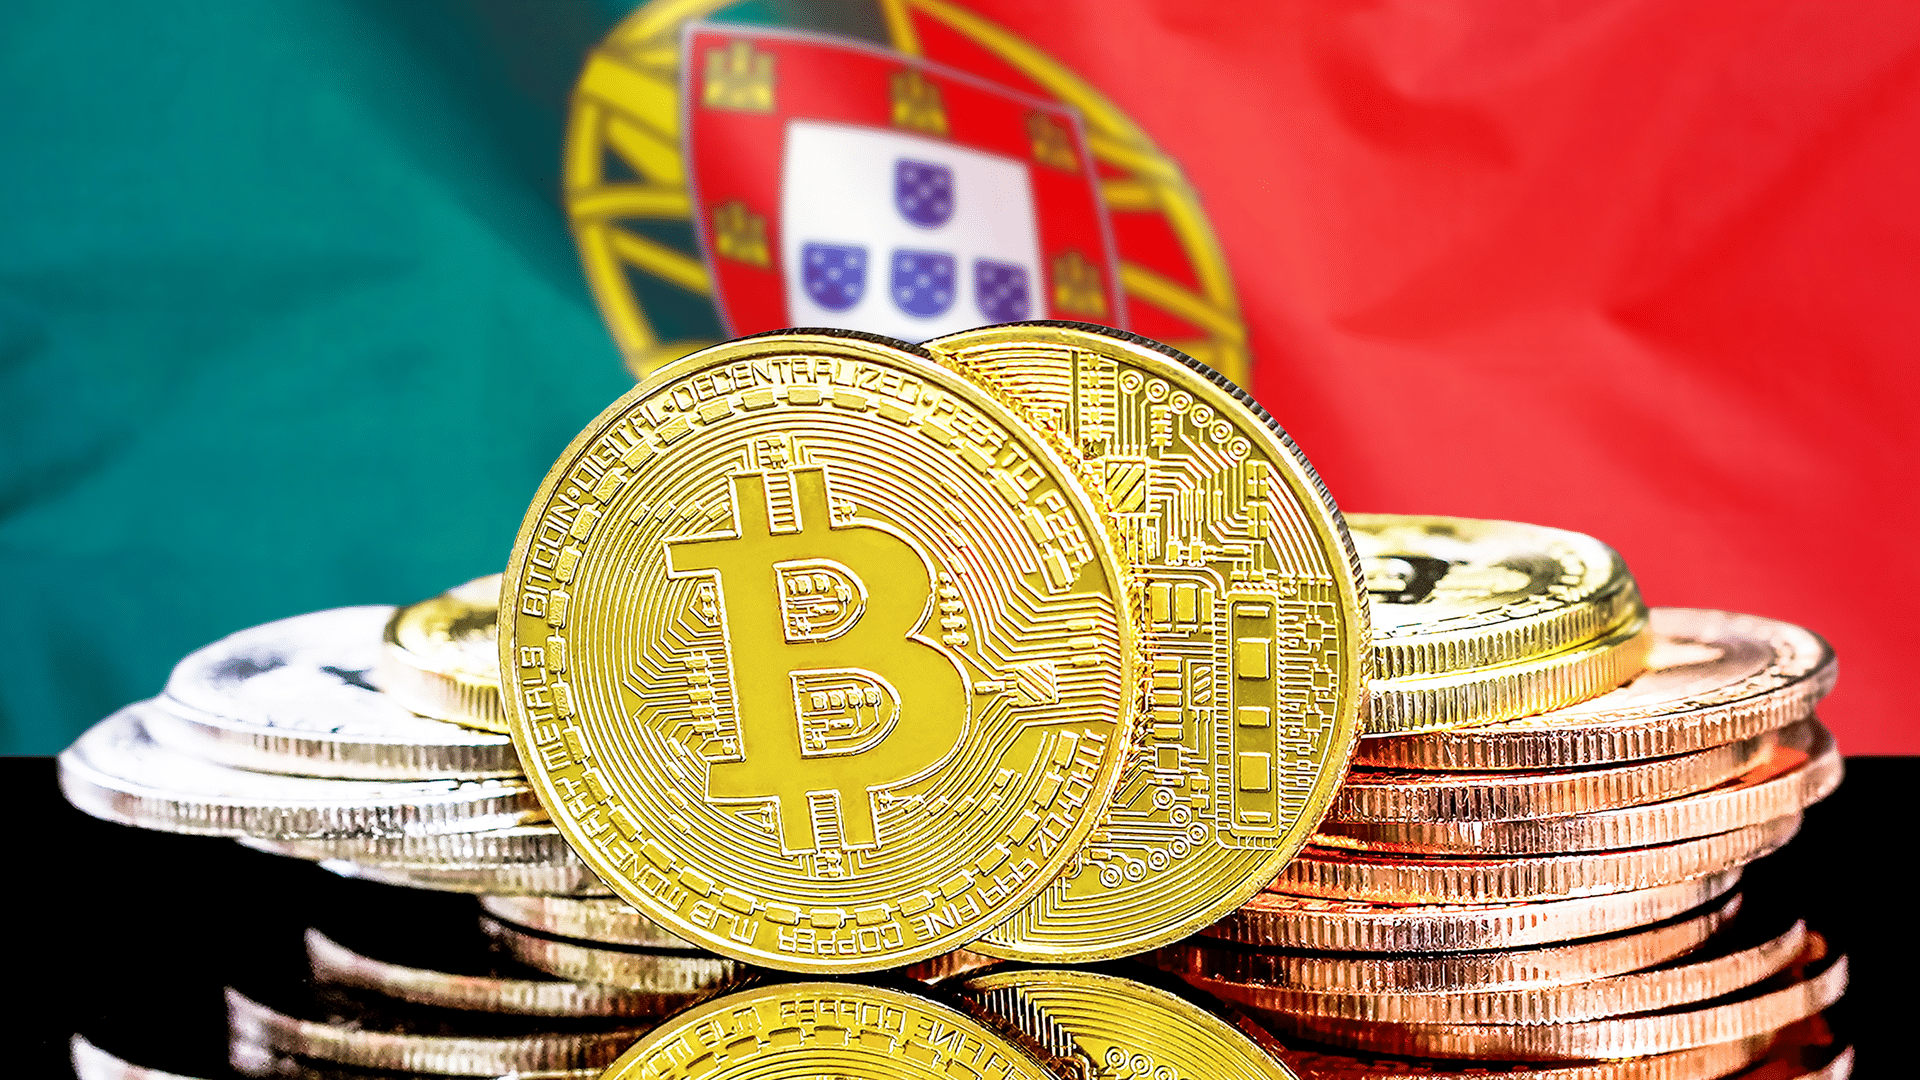  Portugalijos parlamentas atmetė mokesčių pasiūlymus dėl Bitcoin ir kriptovaliutų